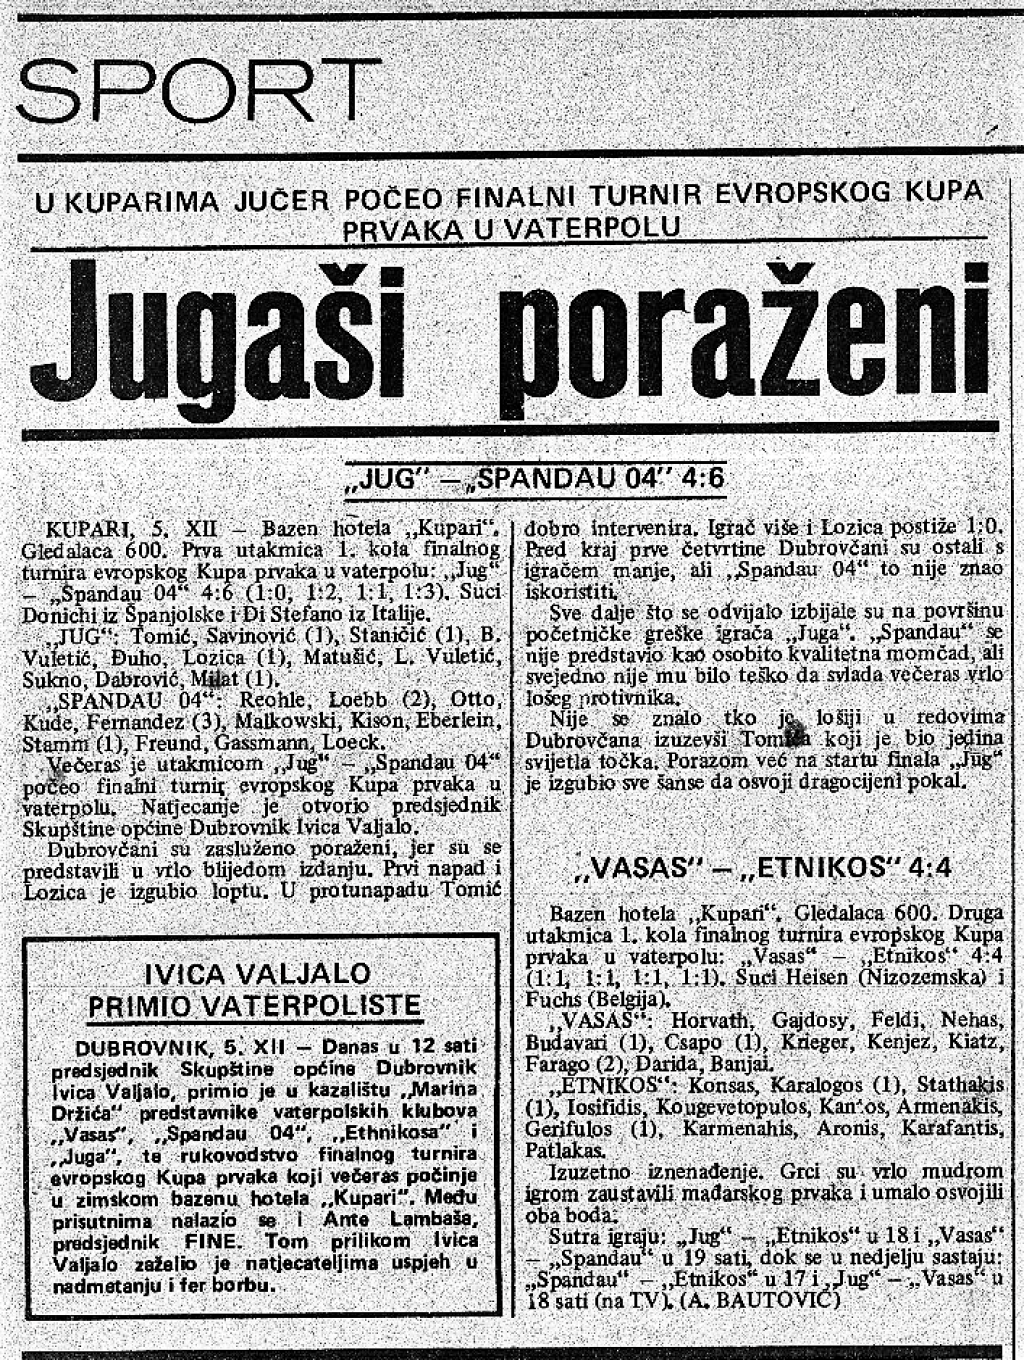 &lt;p&gt;Prvi europski ogled Juga i Spandaua odigran je 5. prosinca 1980. godine u Kuparima&lt;/p&gt;